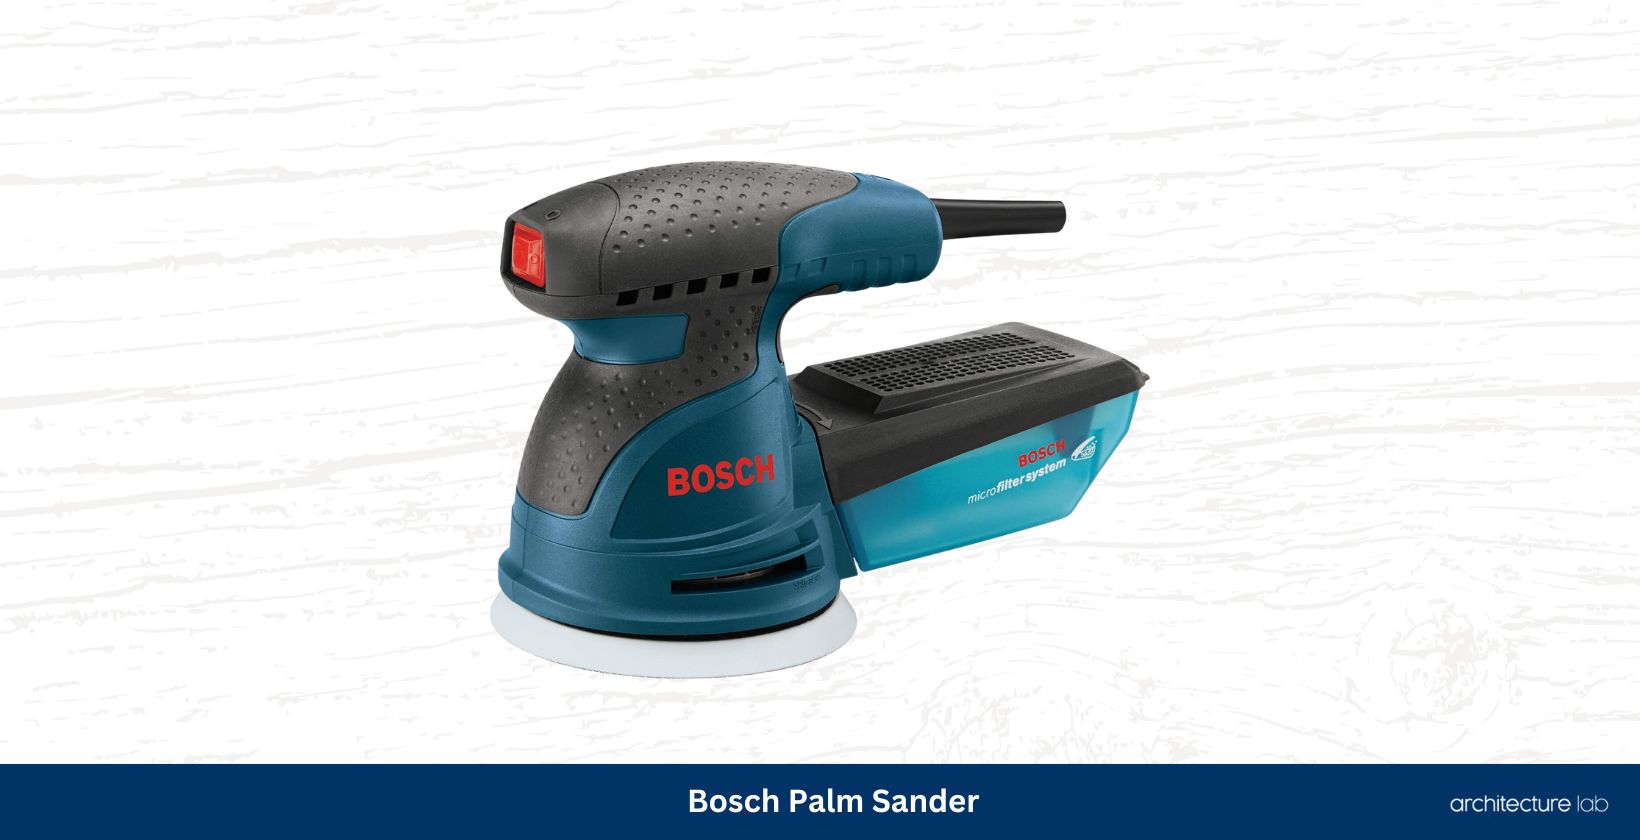 Bosch palm sander